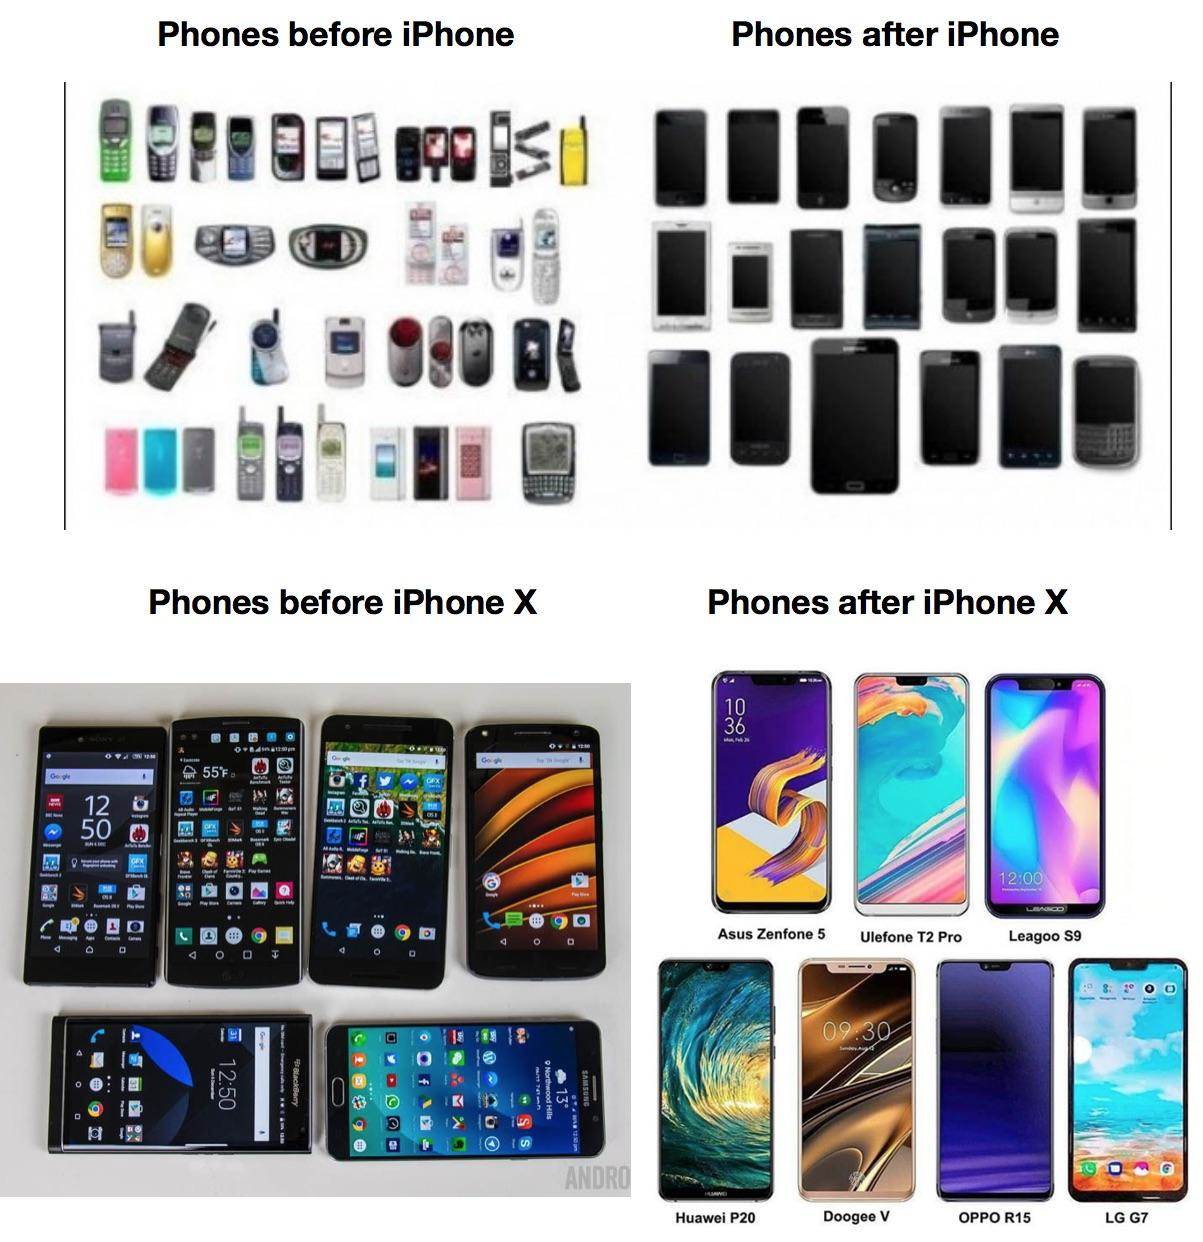 Zobacz jak zmieniały się telefony po wprowadzeniu iPhone?a ciekawostki iPhone  iPhone to urządzenie, które zmieniło świat telefonów. Poniżej znajdziecie ciekawą grafikę, która pokazuje jak wyglądał rynek urządzeń z Androidem przed i po premierze iPhone?a. iP